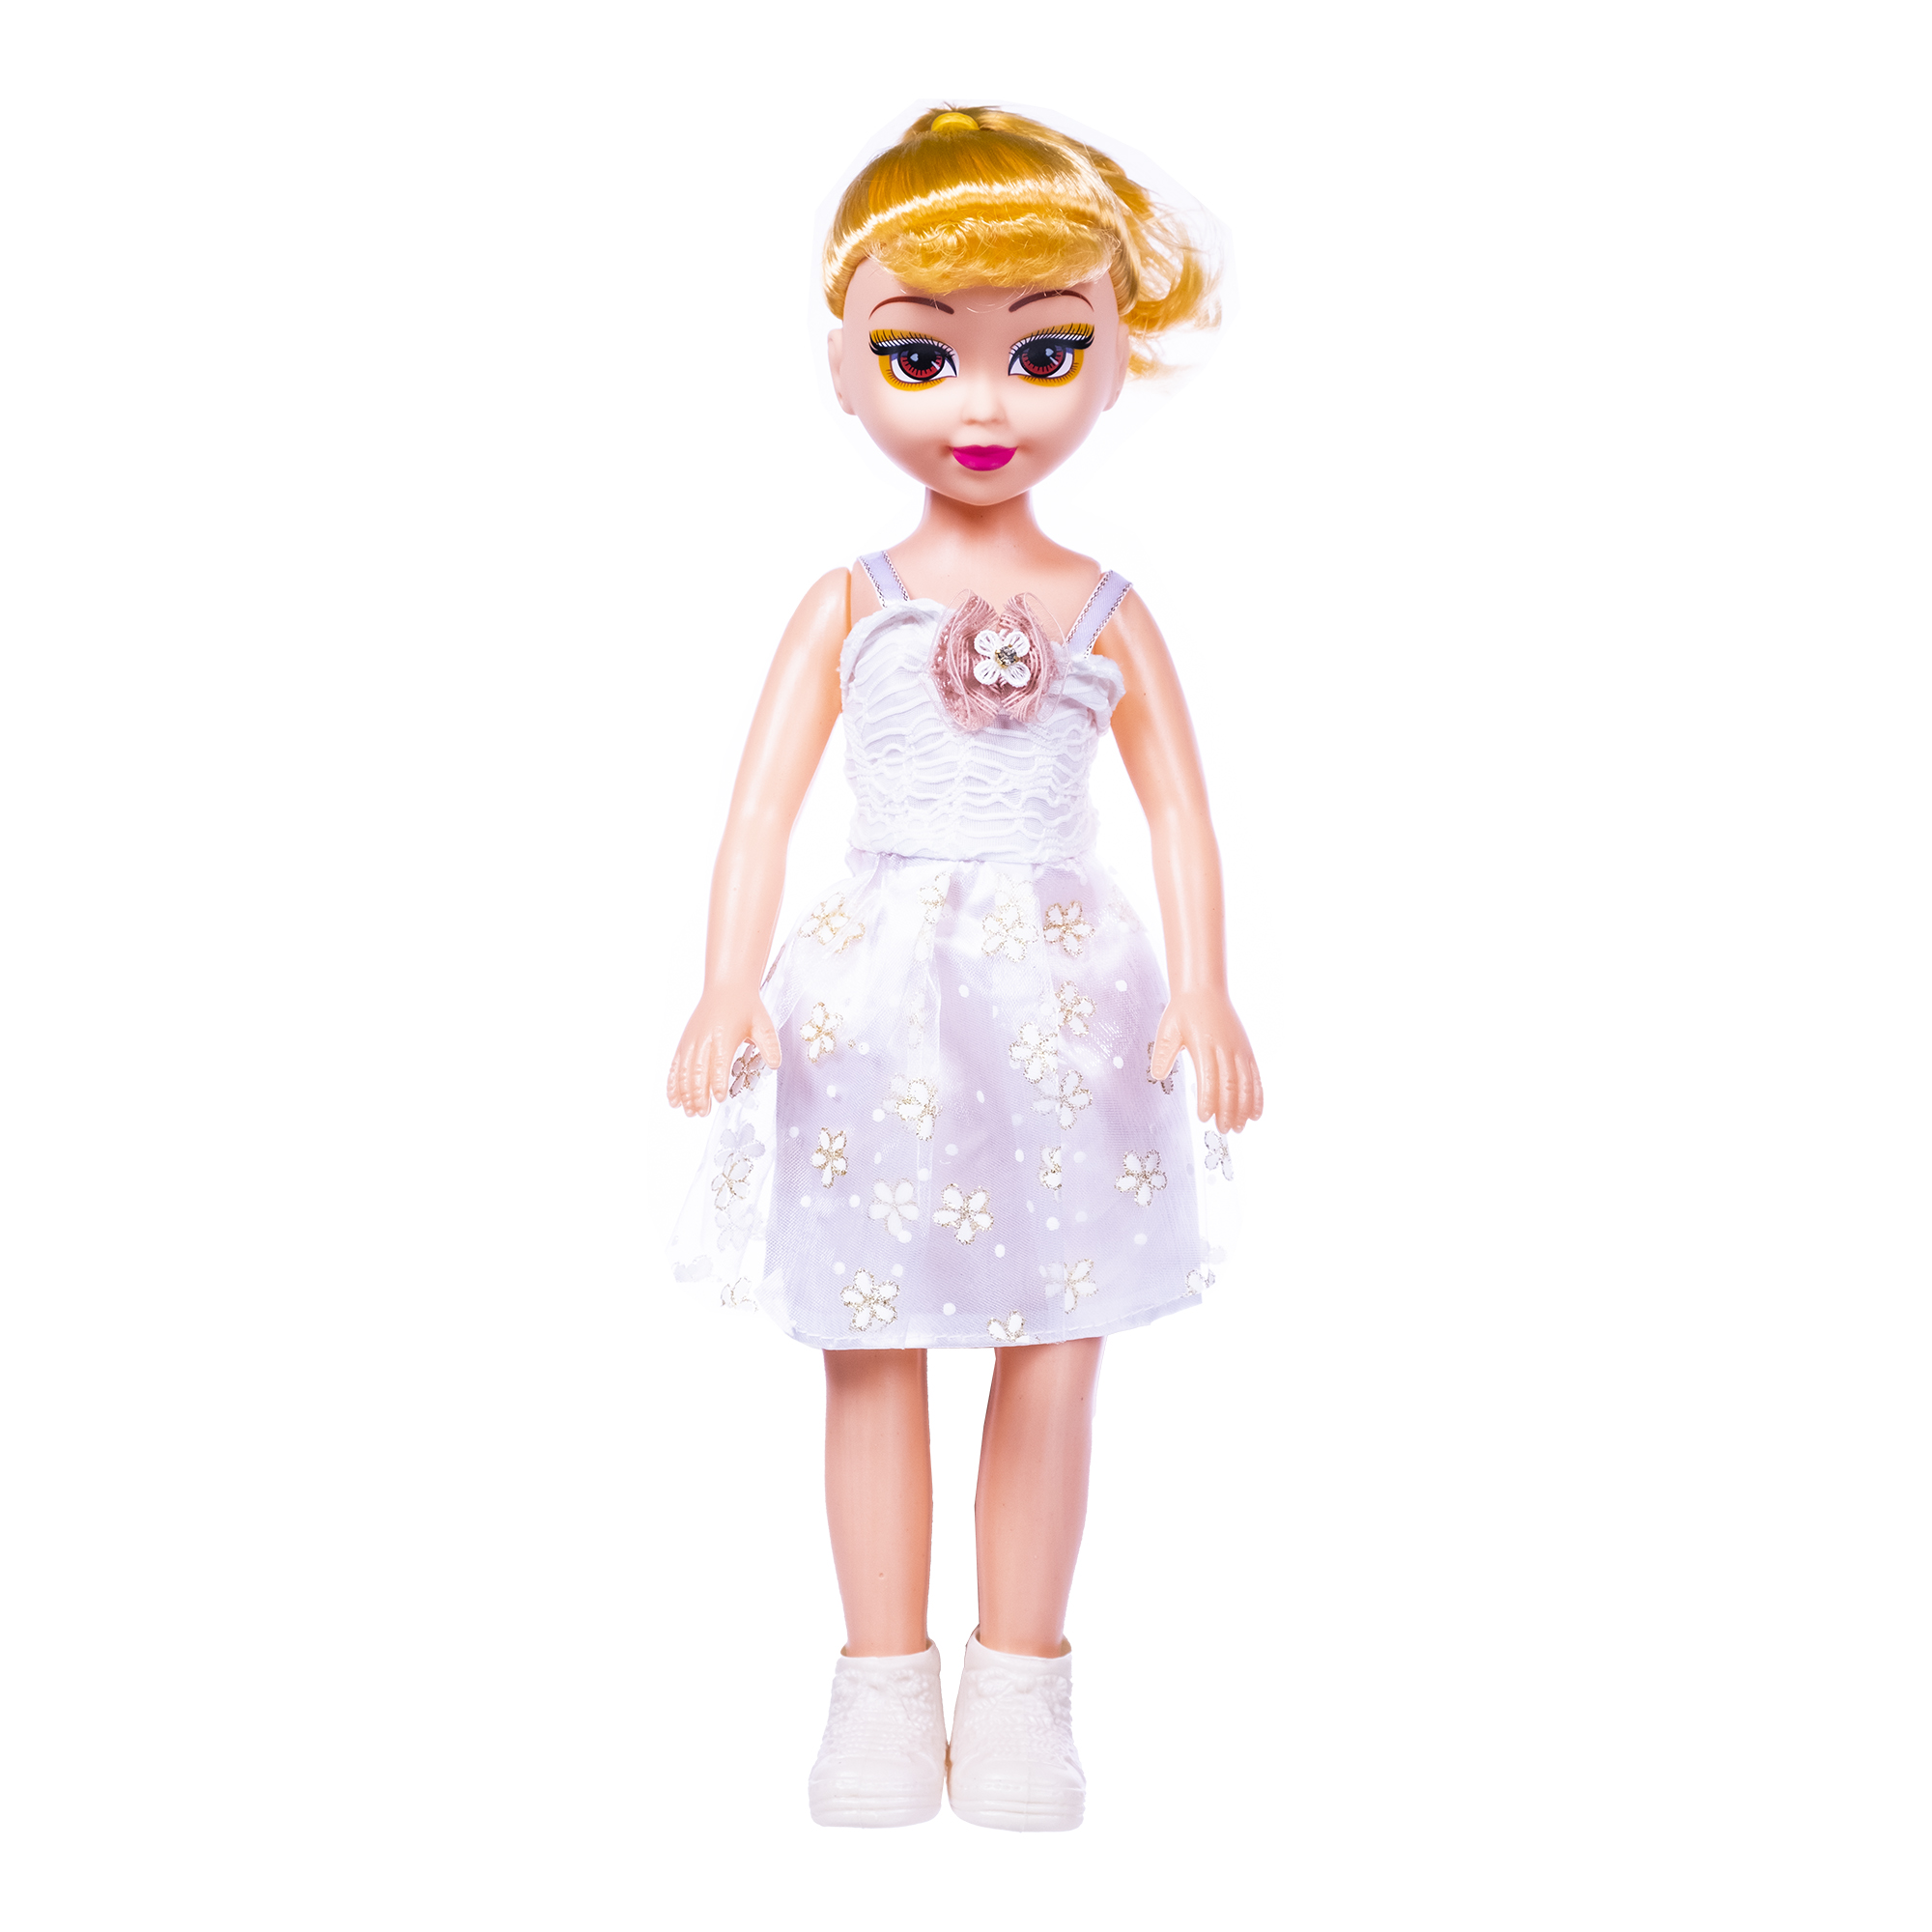 Кукла Феникс тойз со звуком, в комплекте с батарейками, 43 см, 1000063 кукла классическая алена со звуком высота 30 см микс